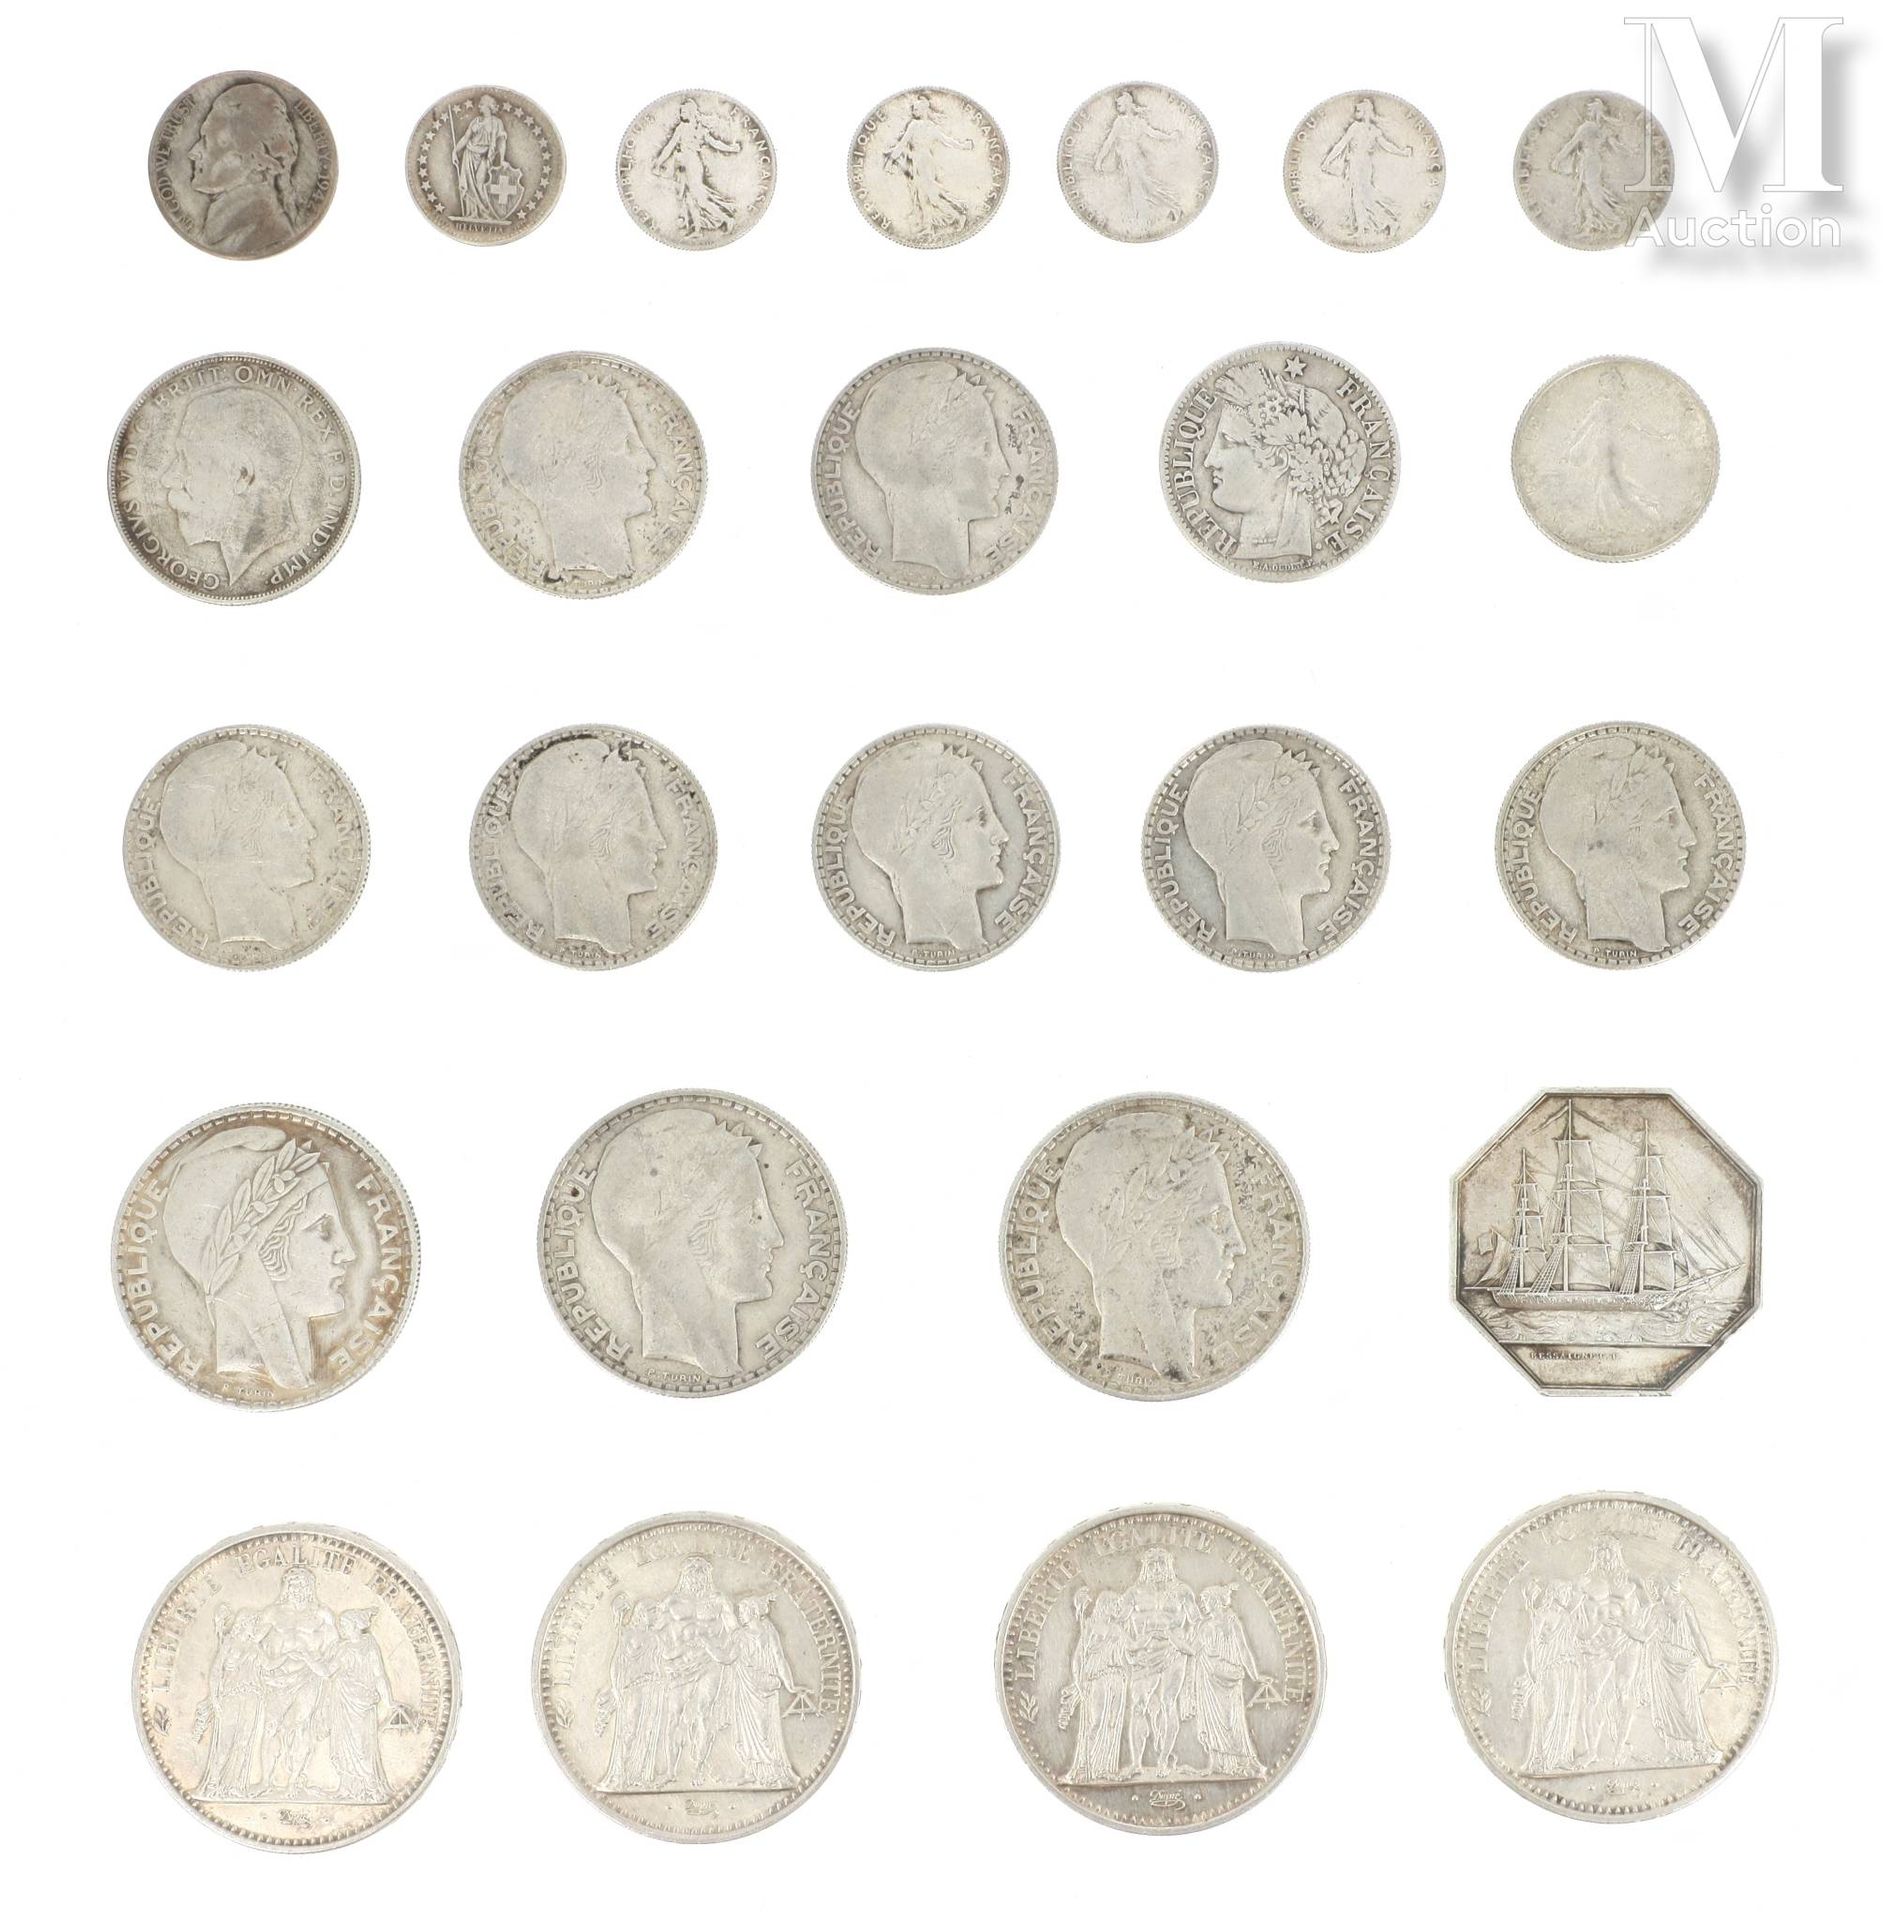 LOT DE PIECES DE MONNAIE EN ARGENT Lot of various silver coins including:

- 3 x&hellip;